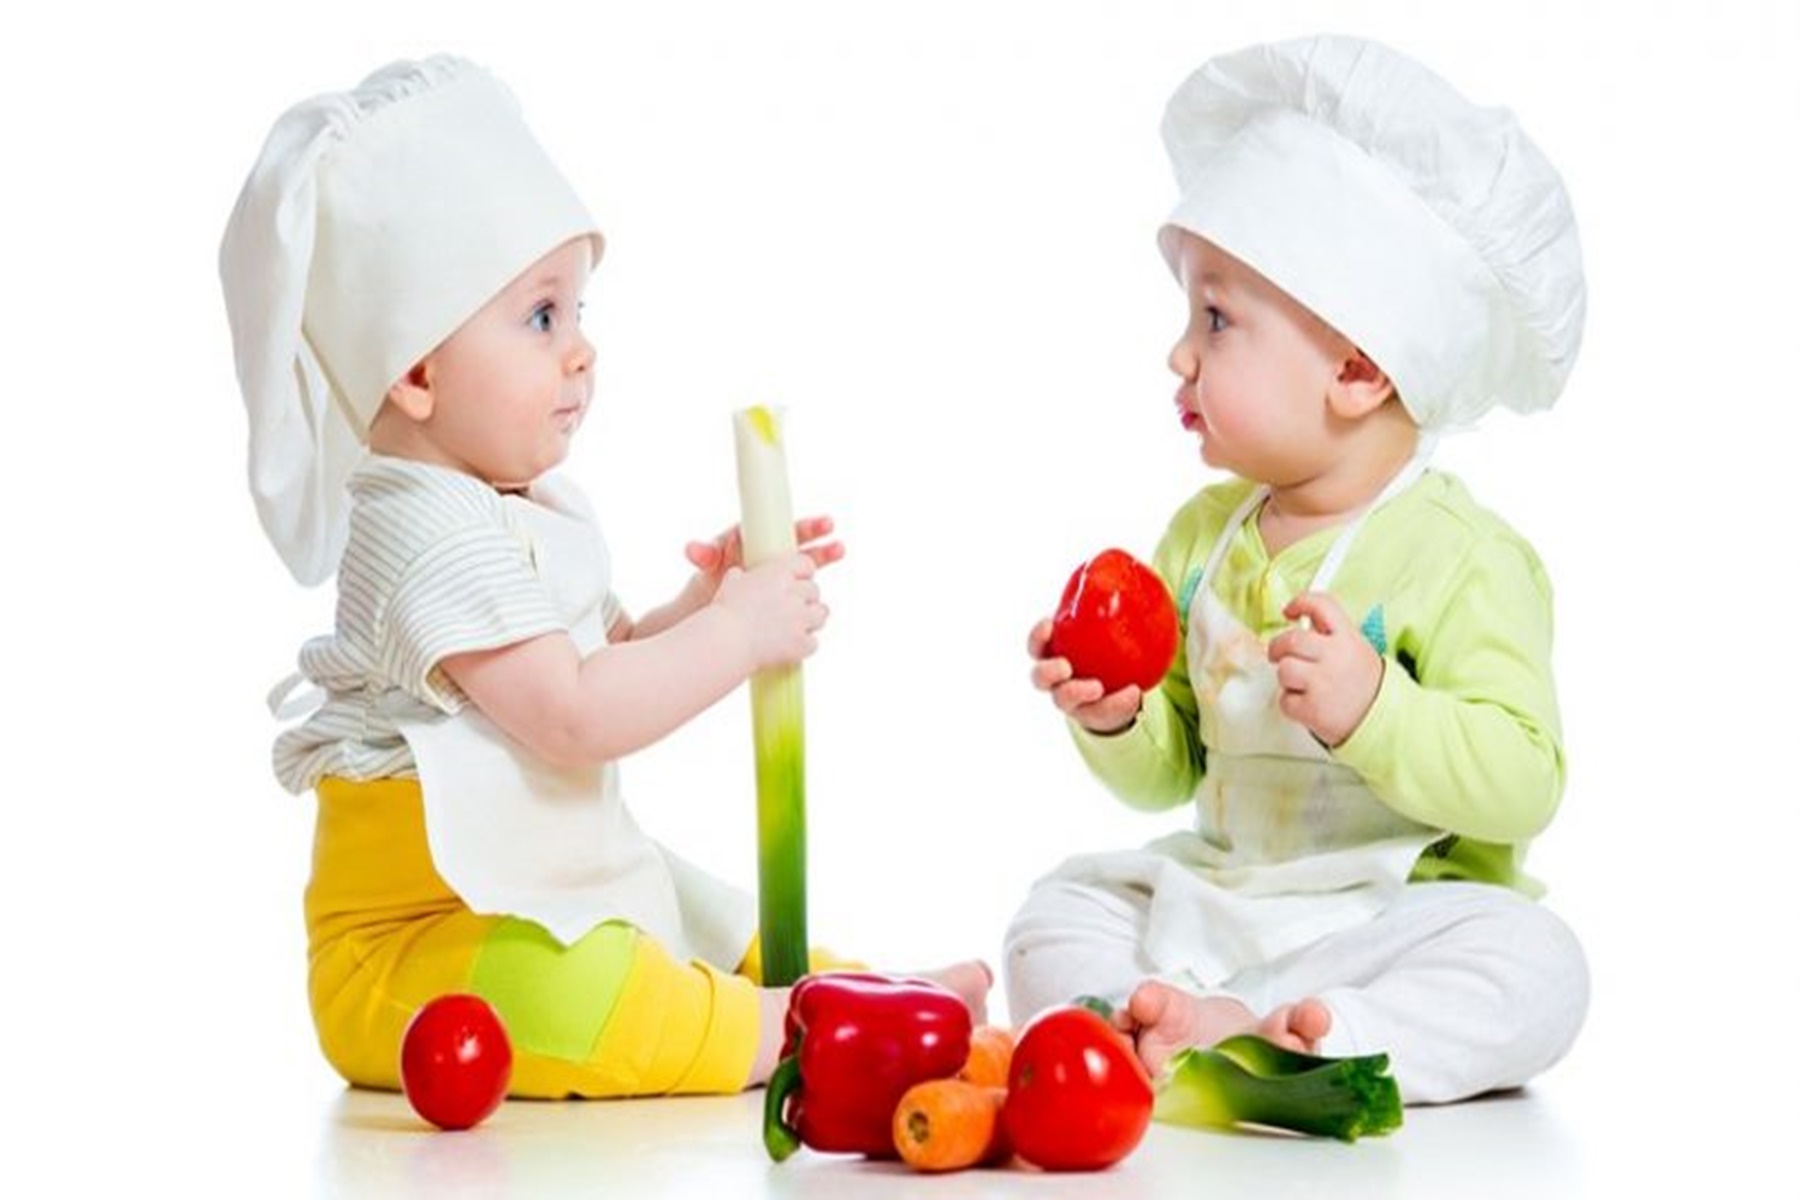 Διατροφή : Προτρέψτε τα παιδιά σας να τρώνε υγιεινά